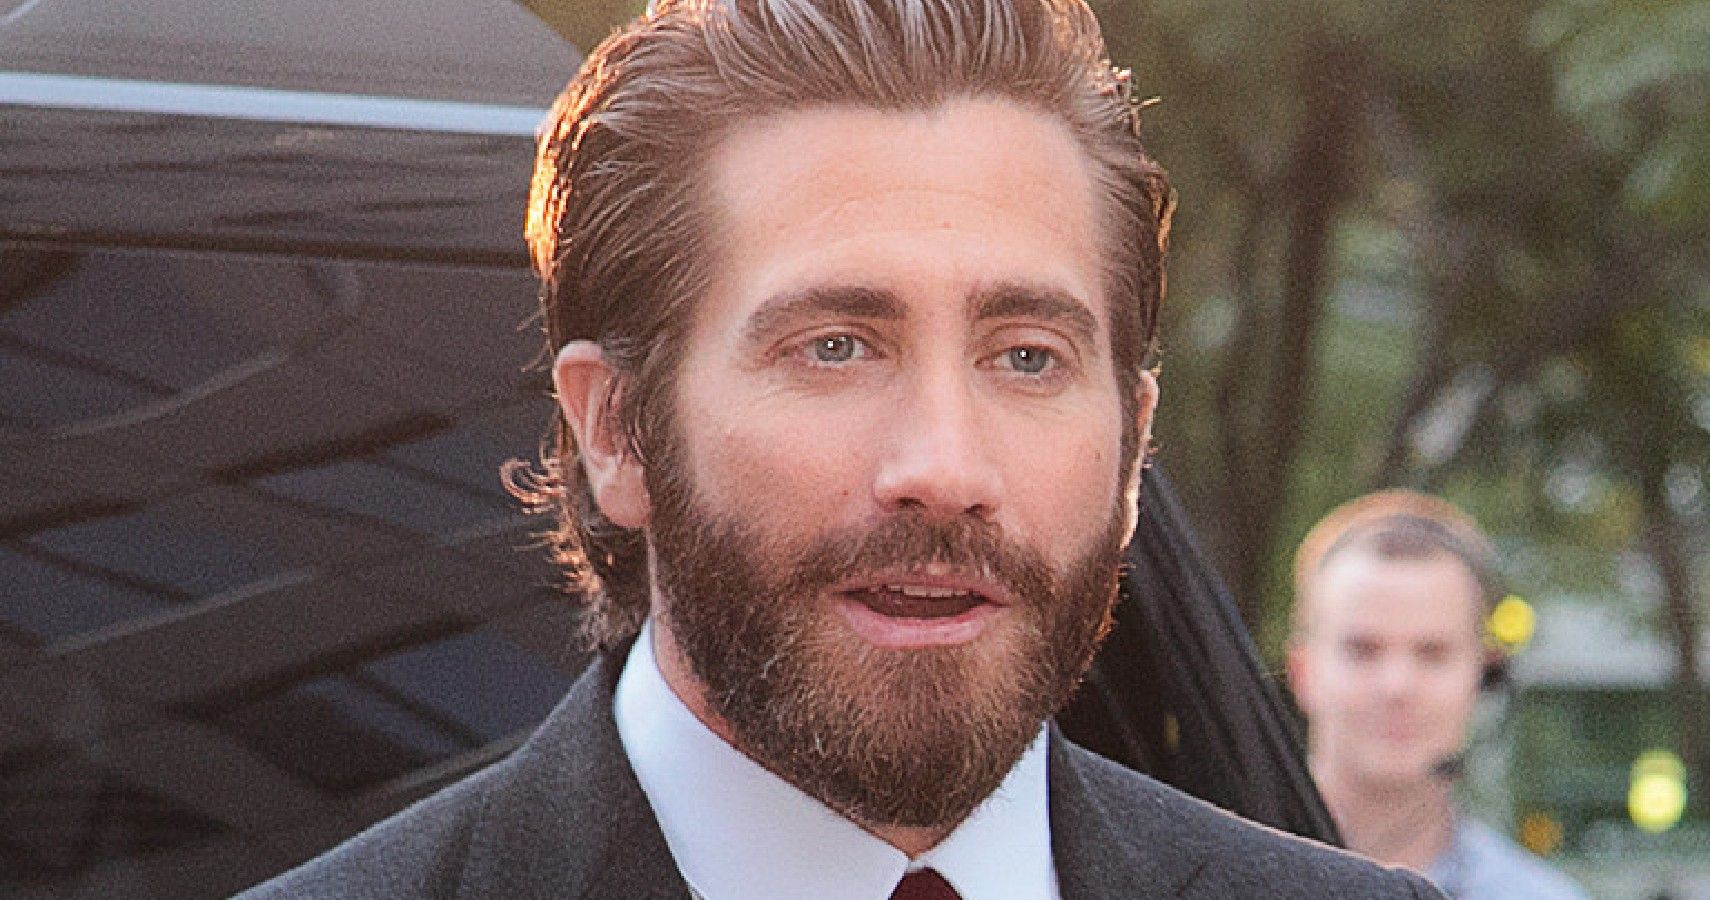 Jake Gyllenhaal Reveals He Feels Ready For Fatherhood 